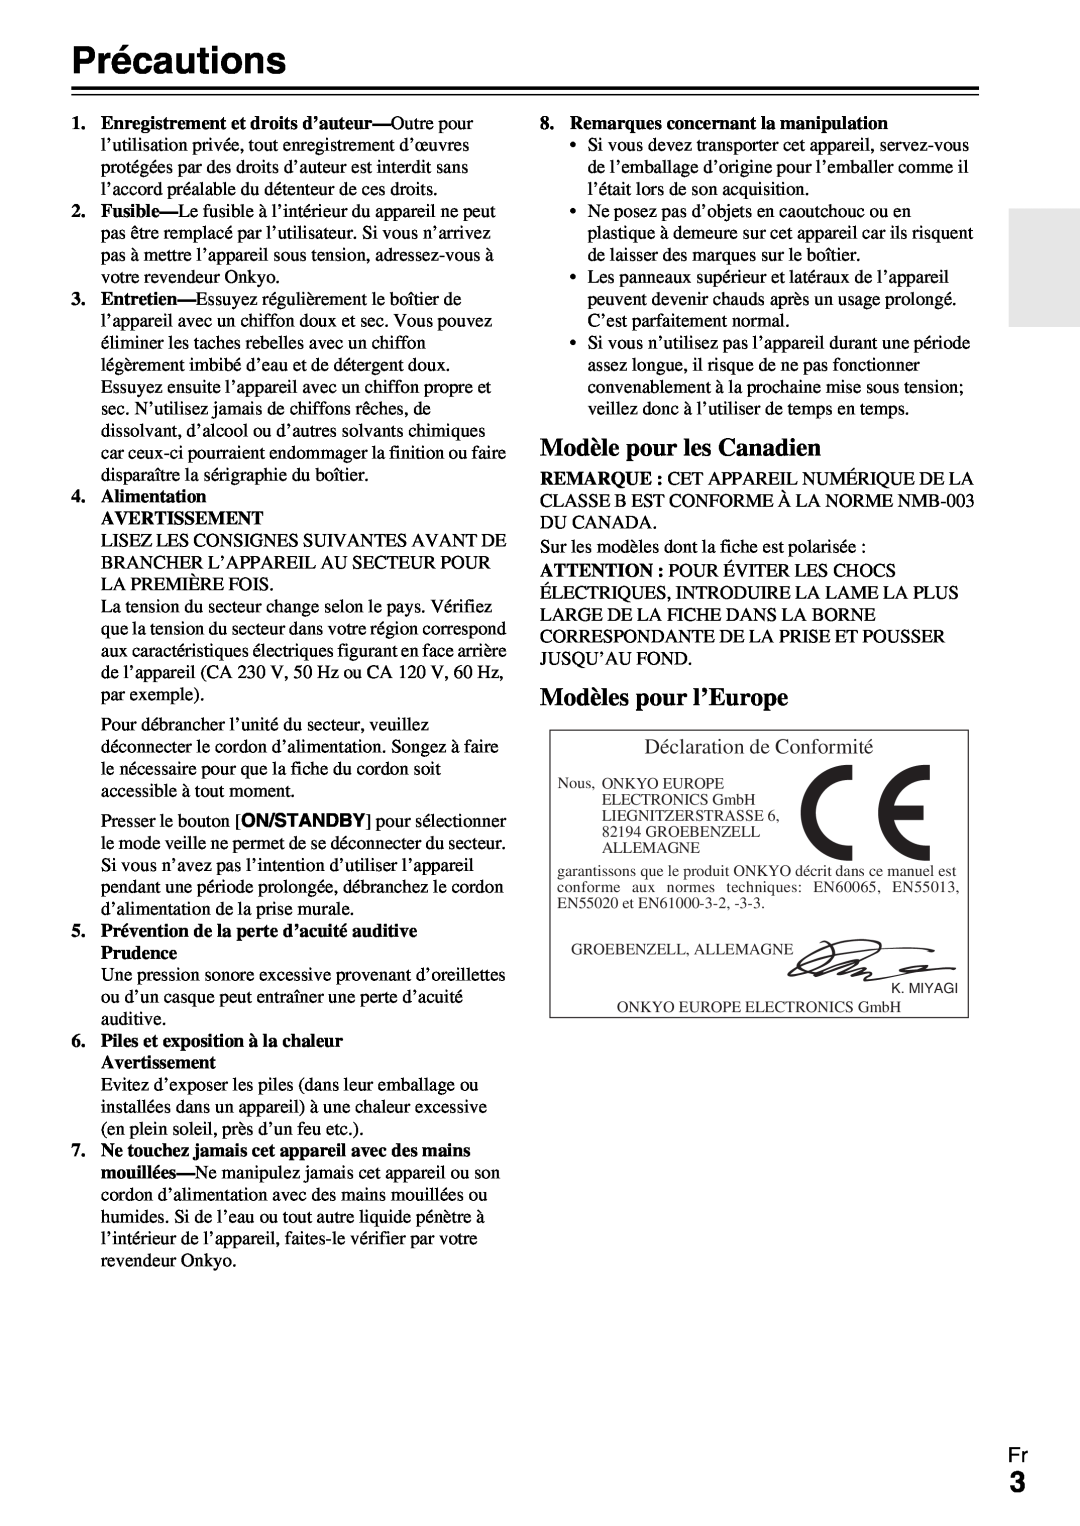 Onkyo HT-R990 instruction manual Précautions, Modèles pour l’Europe, Déclaration de Conformité, Modèle pour les Canadien 